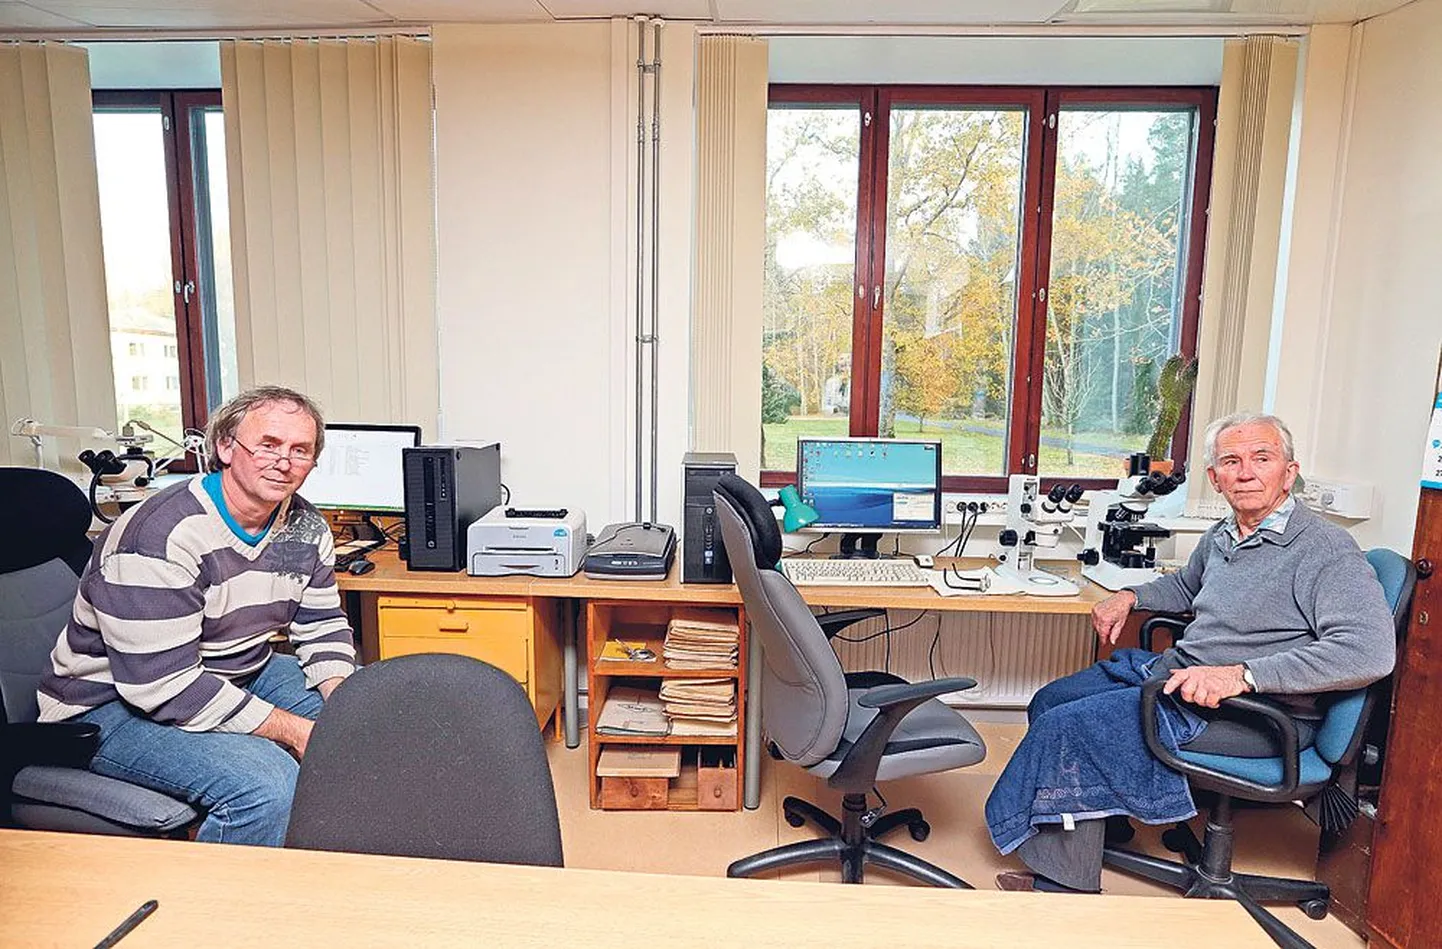 Limnoloogiakeskuse vanemteadur, üle poole sajandi väheharjasusse uurinud Tarmo Timm (paremal) jagab kabinetti oma poja, vanemteadur Henn Timmiga, kes uurib põhjaloomastikku.